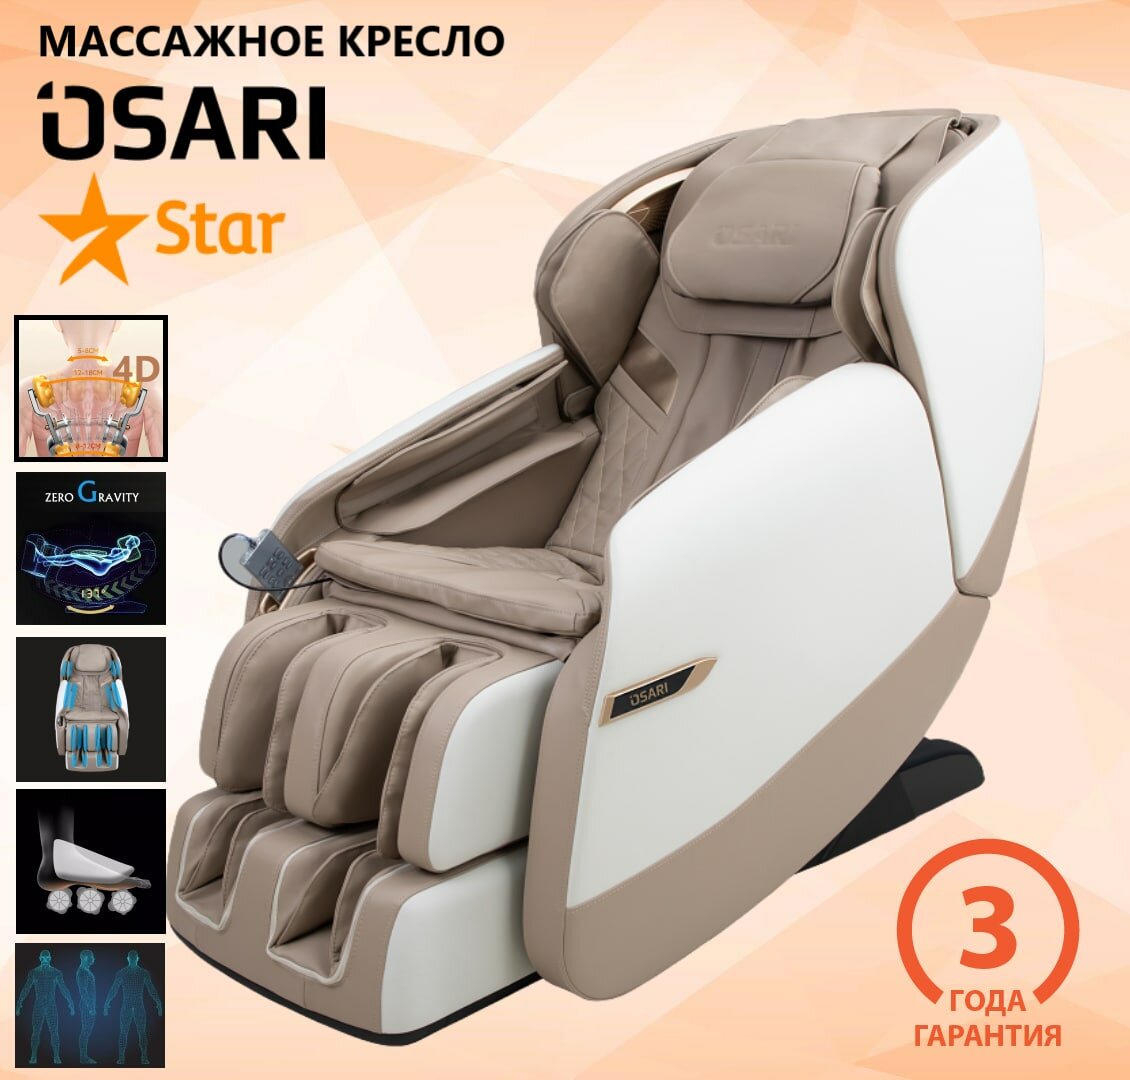 Массажное кресло OSARI Star